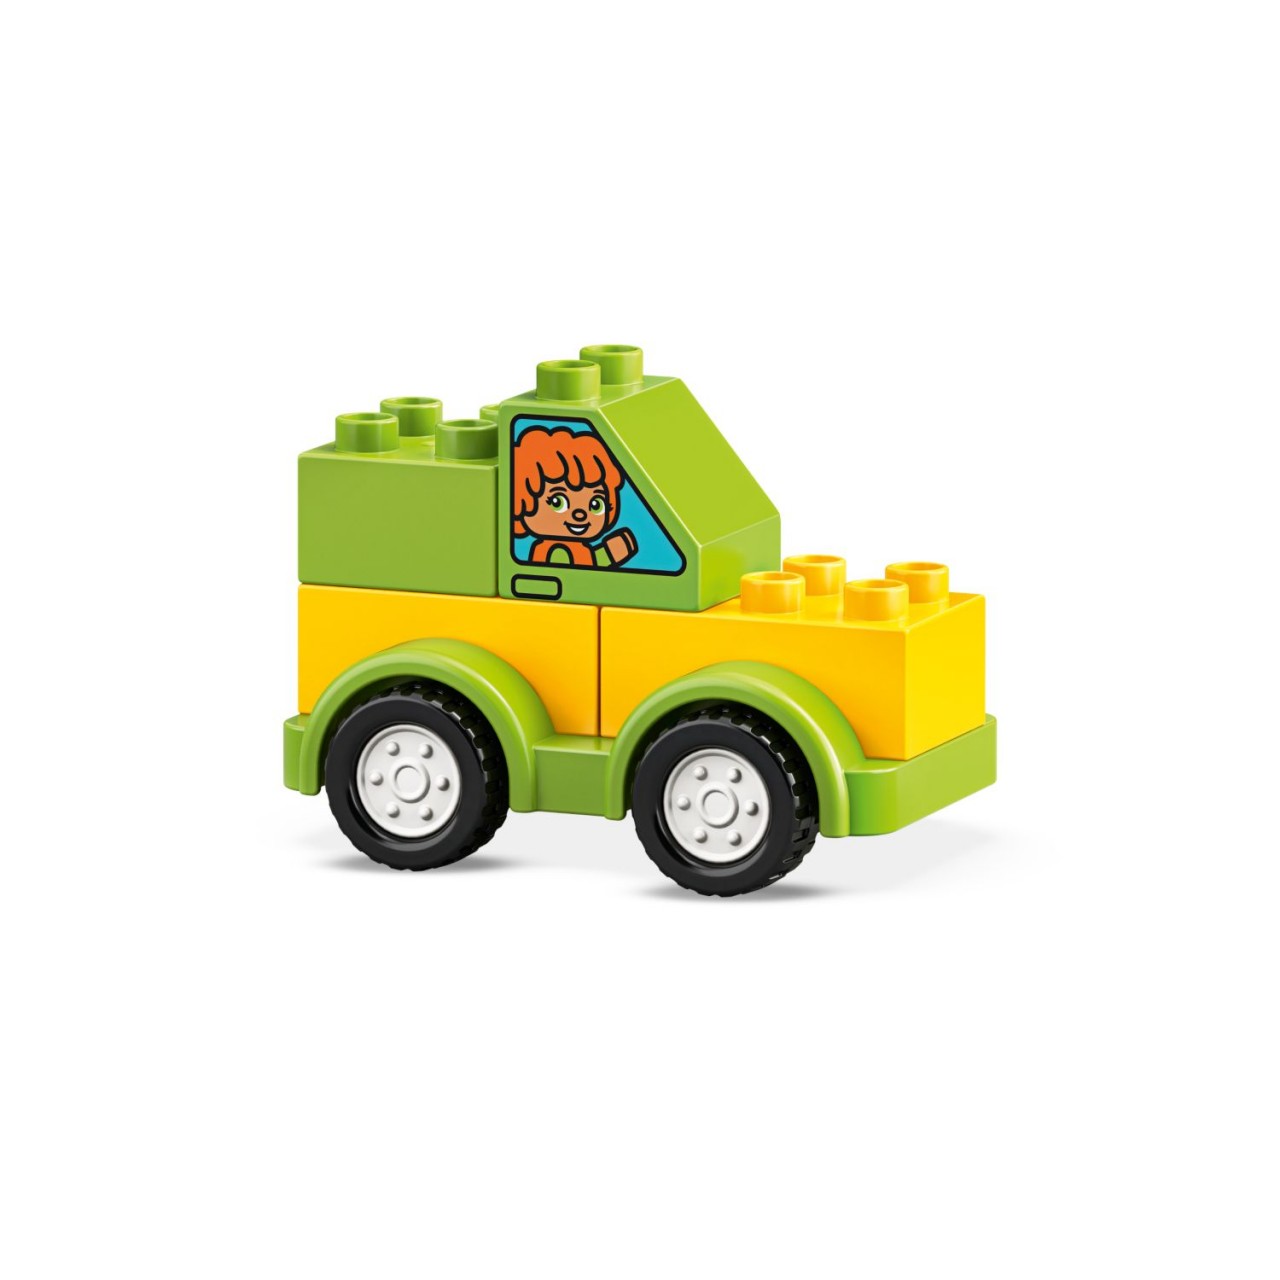 LEGO DUPLO 10886 Meine ersten Fahrzeuge